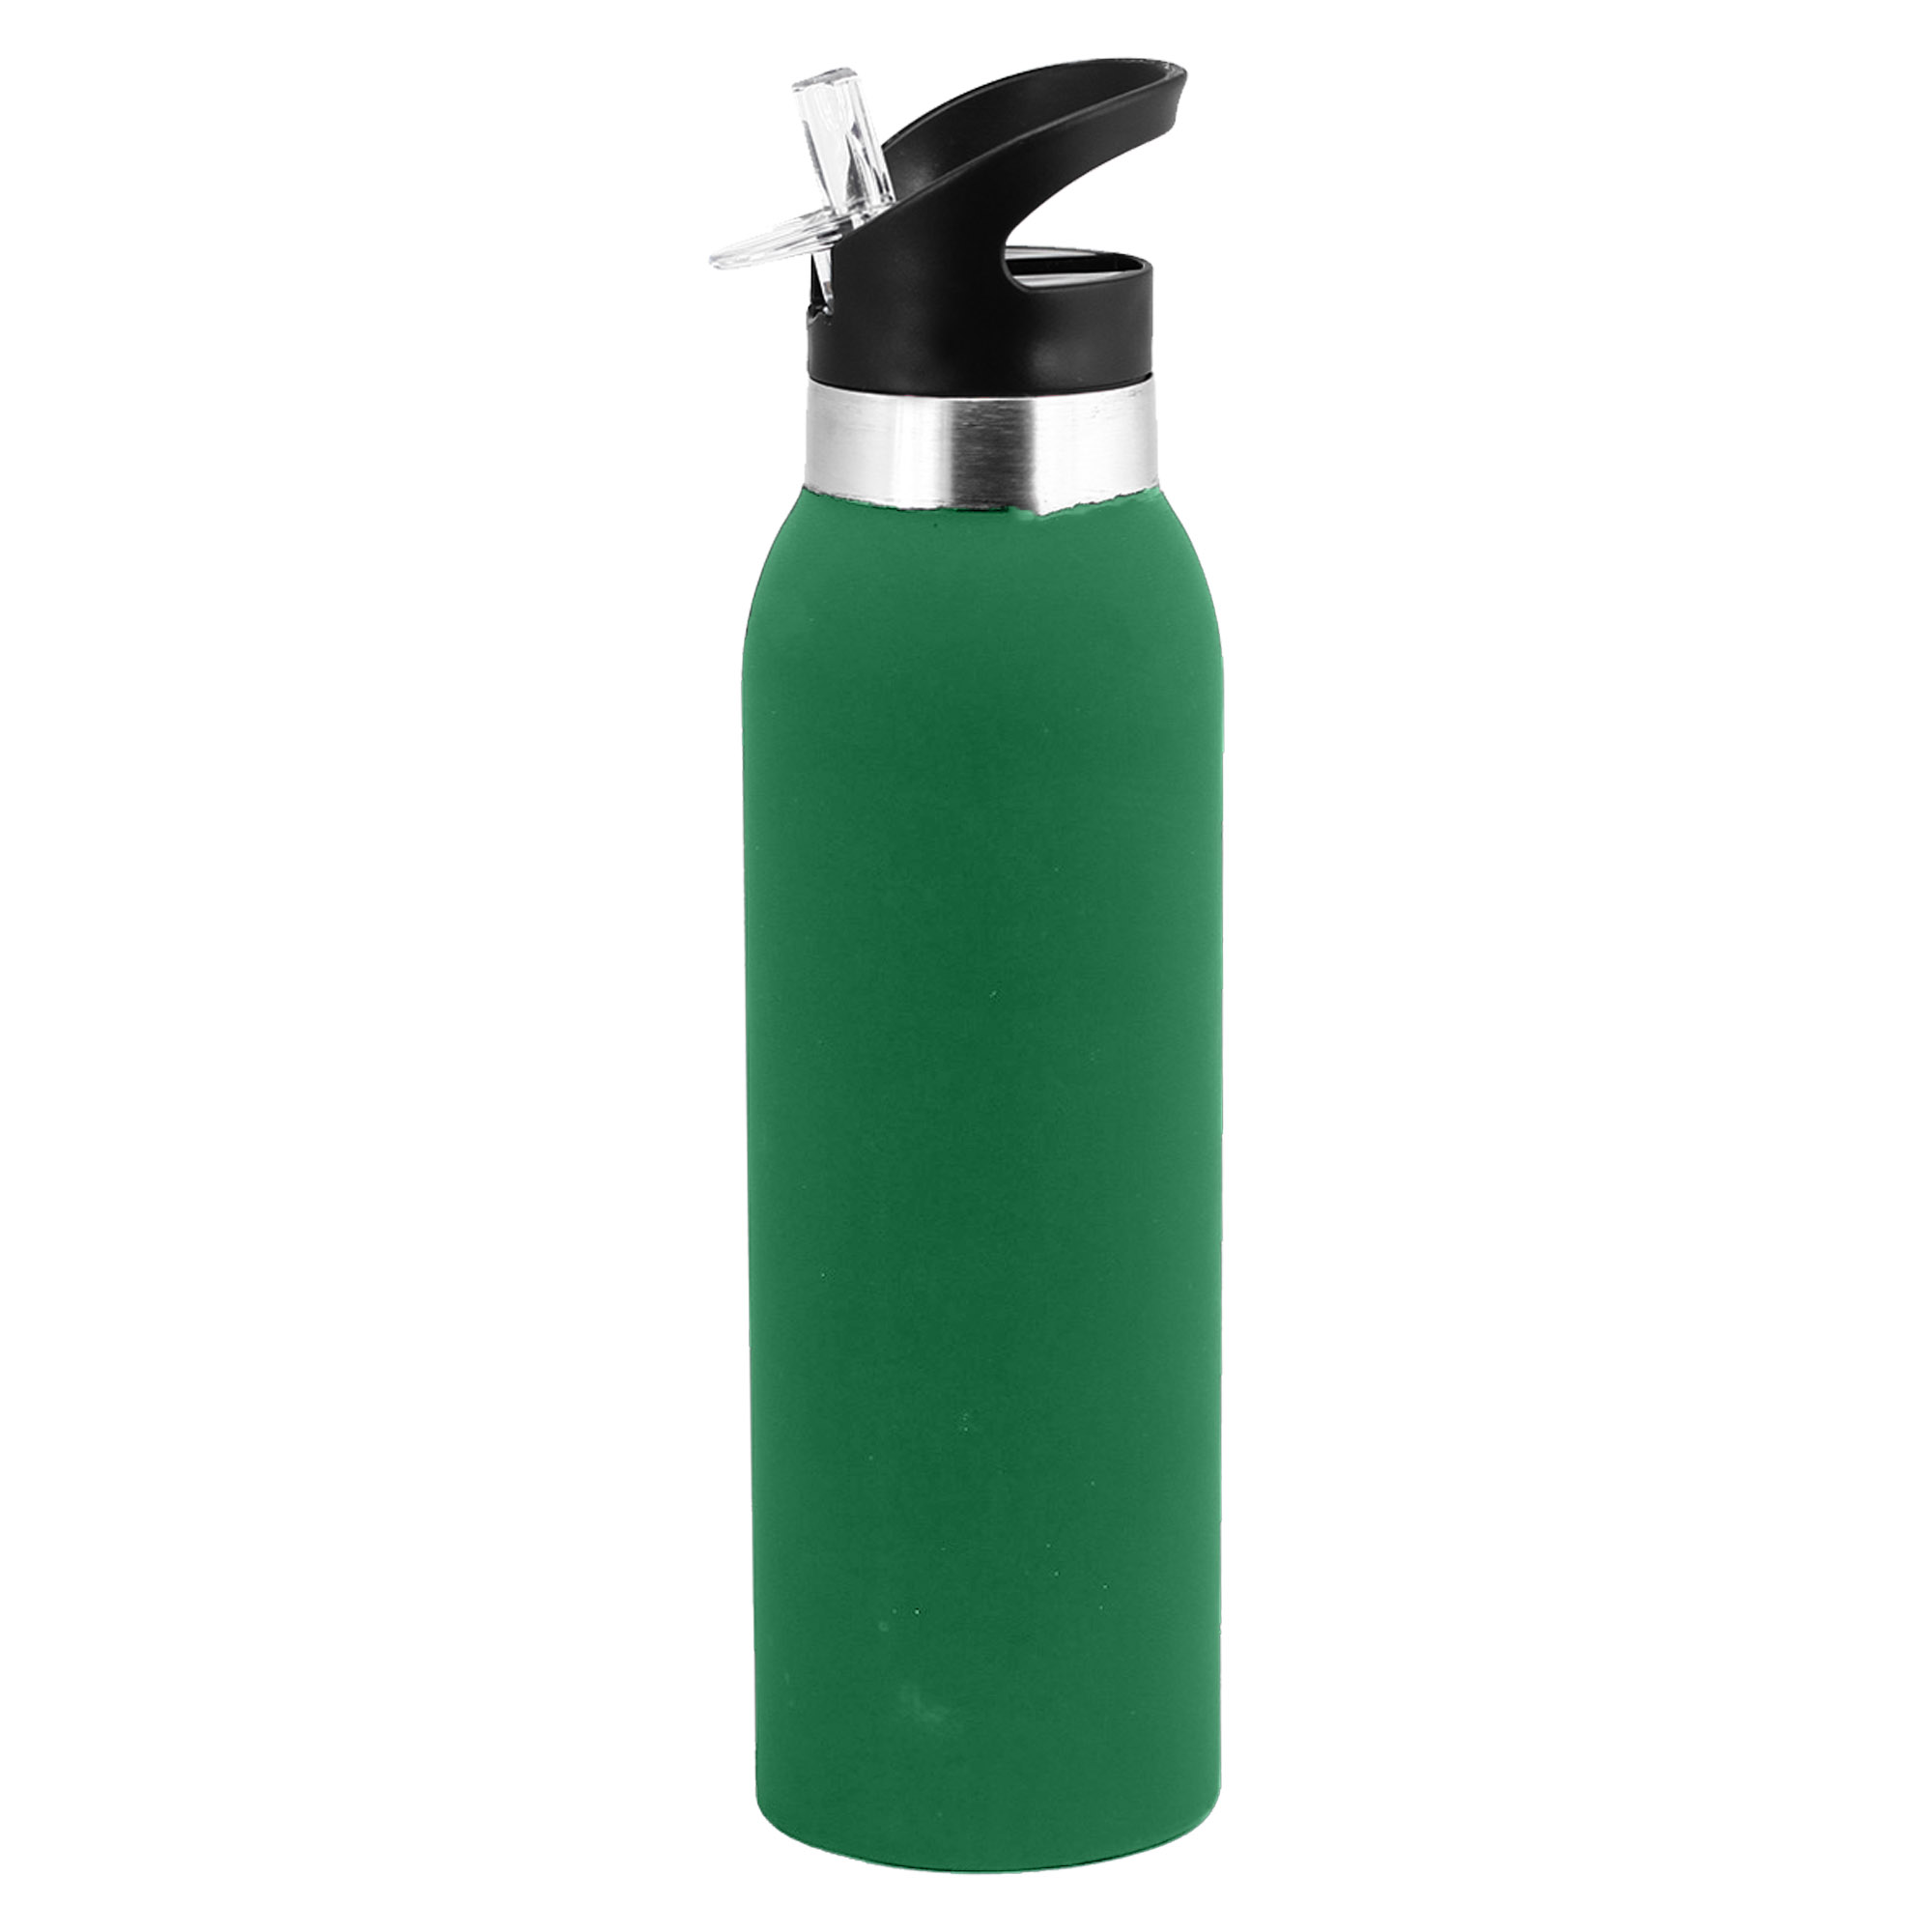 Bulk Custom Made Veola Green Drink Bottle Online in Perth Australia